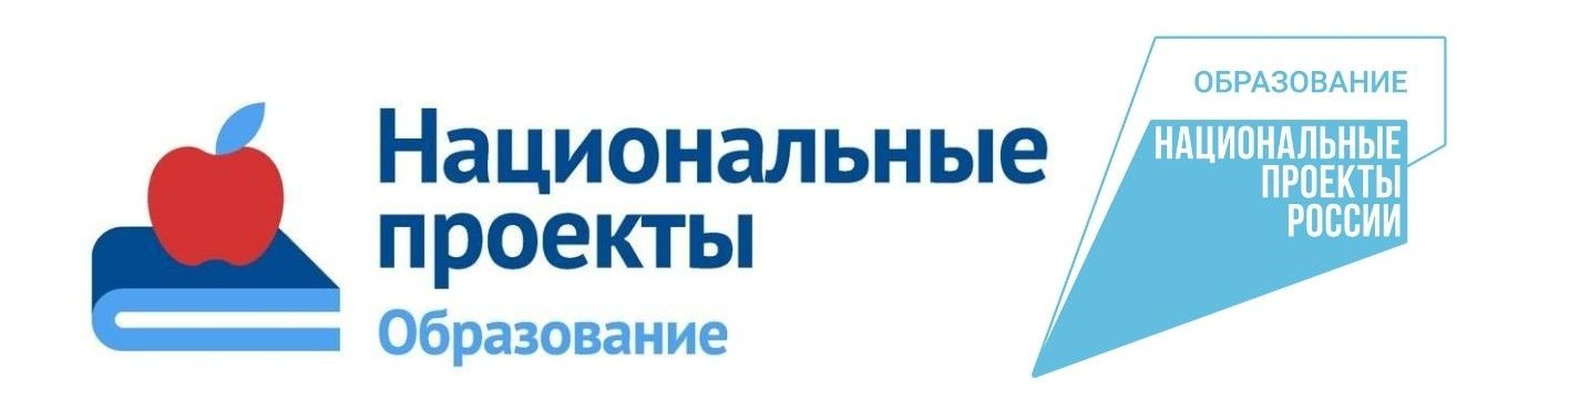 Логотип министерство просвещения